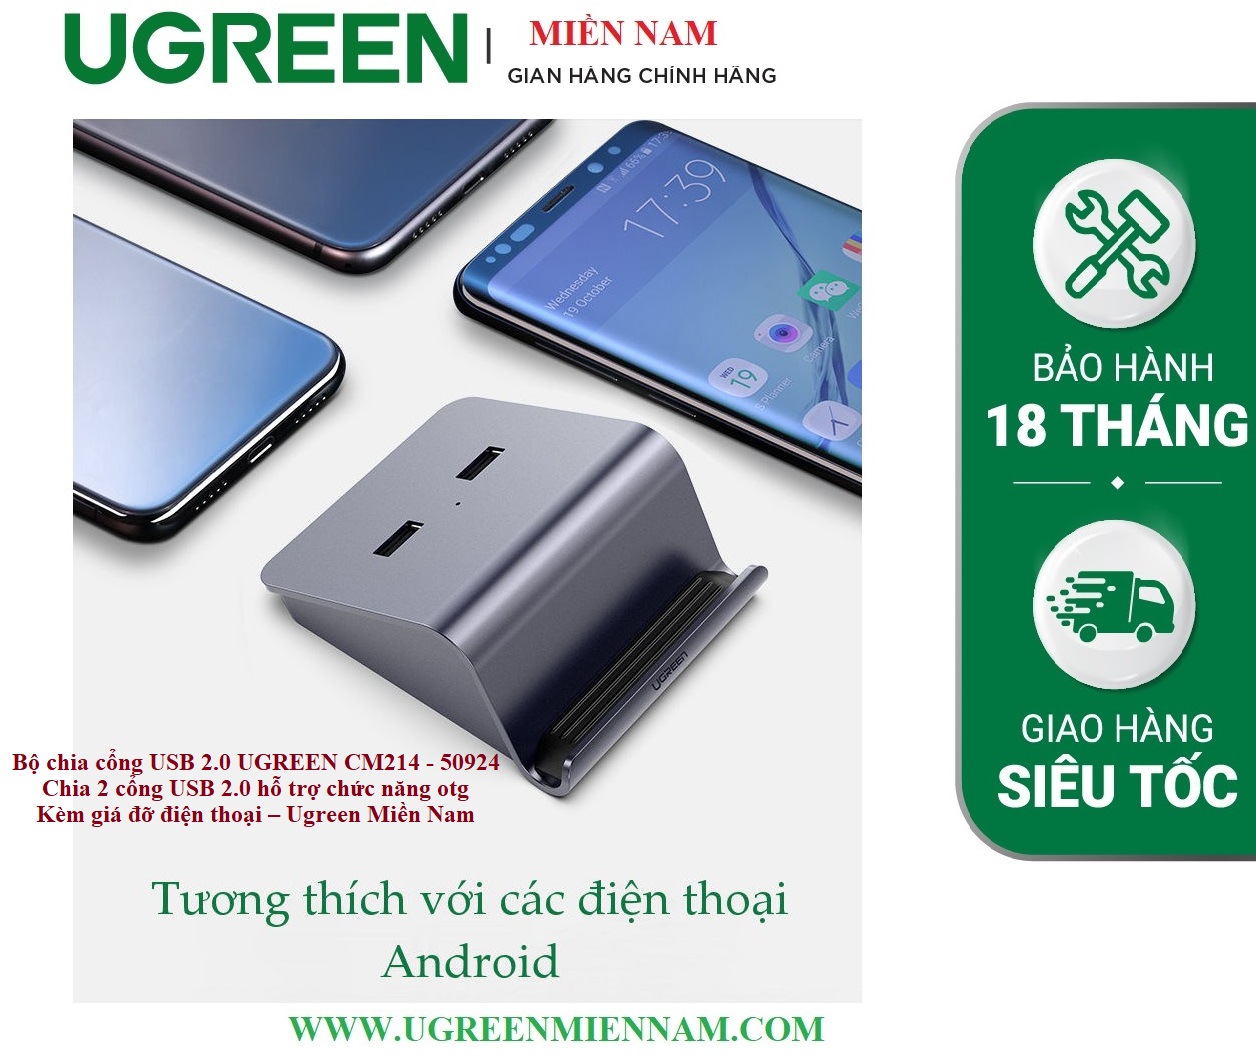 Bộ chia cổng USB 2.0 UGREEN CM214 50924 Chia 2 cổng USB 2.0 hỗ trợ chức năng otg - Kèm giá đỡ điện thoại – Ugreen Miền Nam